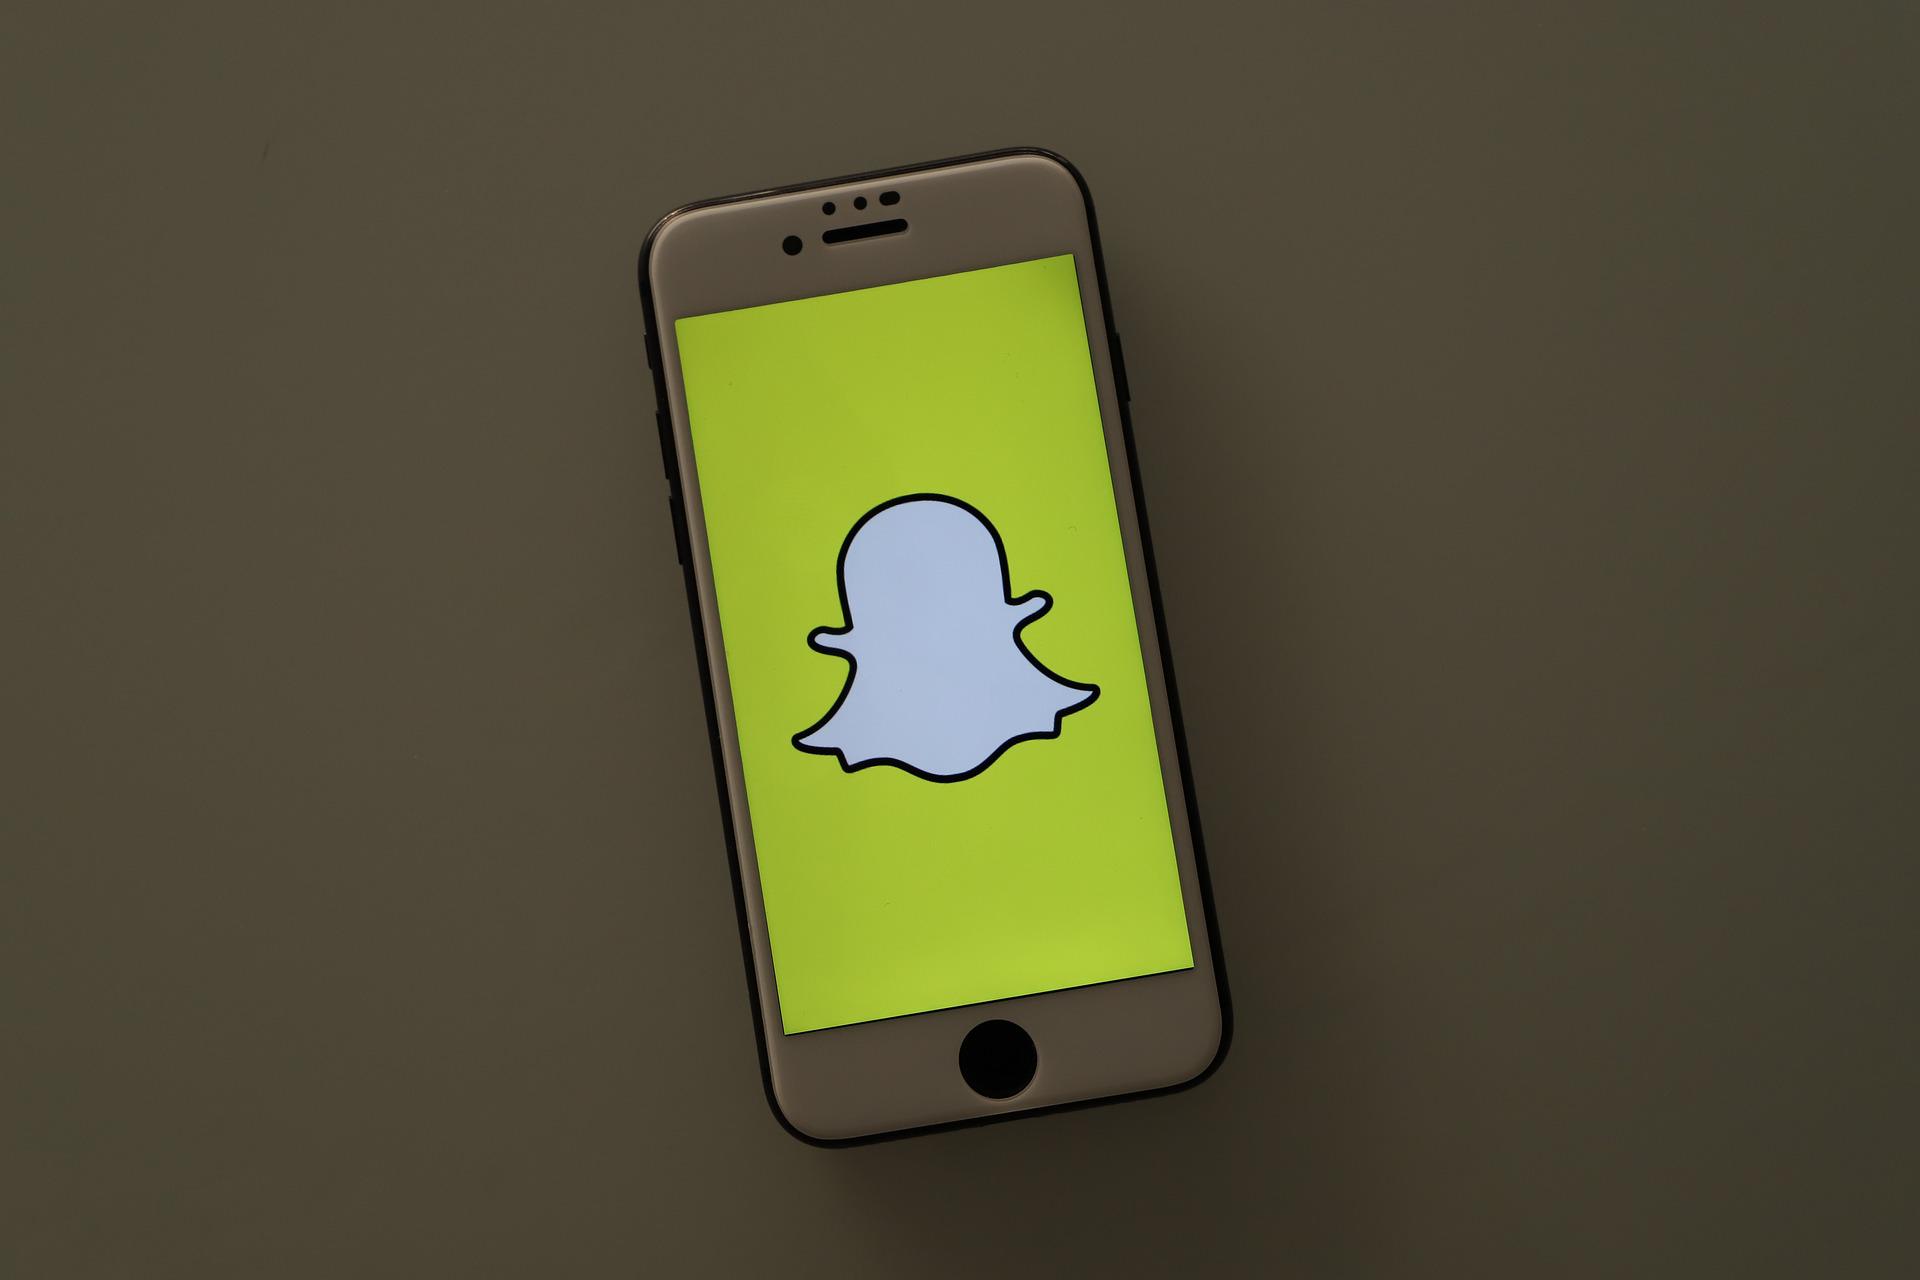 Pertsonalizatu zure Snapchat kontua